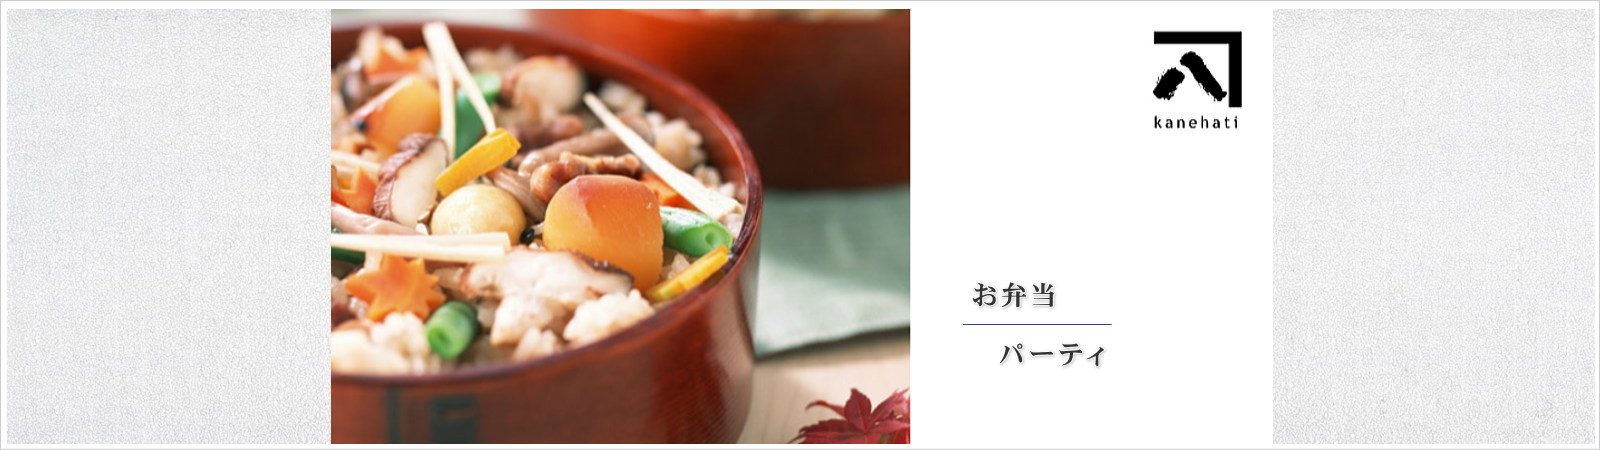 カネハチ はお寿司・天ぷら・お弁当を中心としたお惣菜の製造販売会社です。